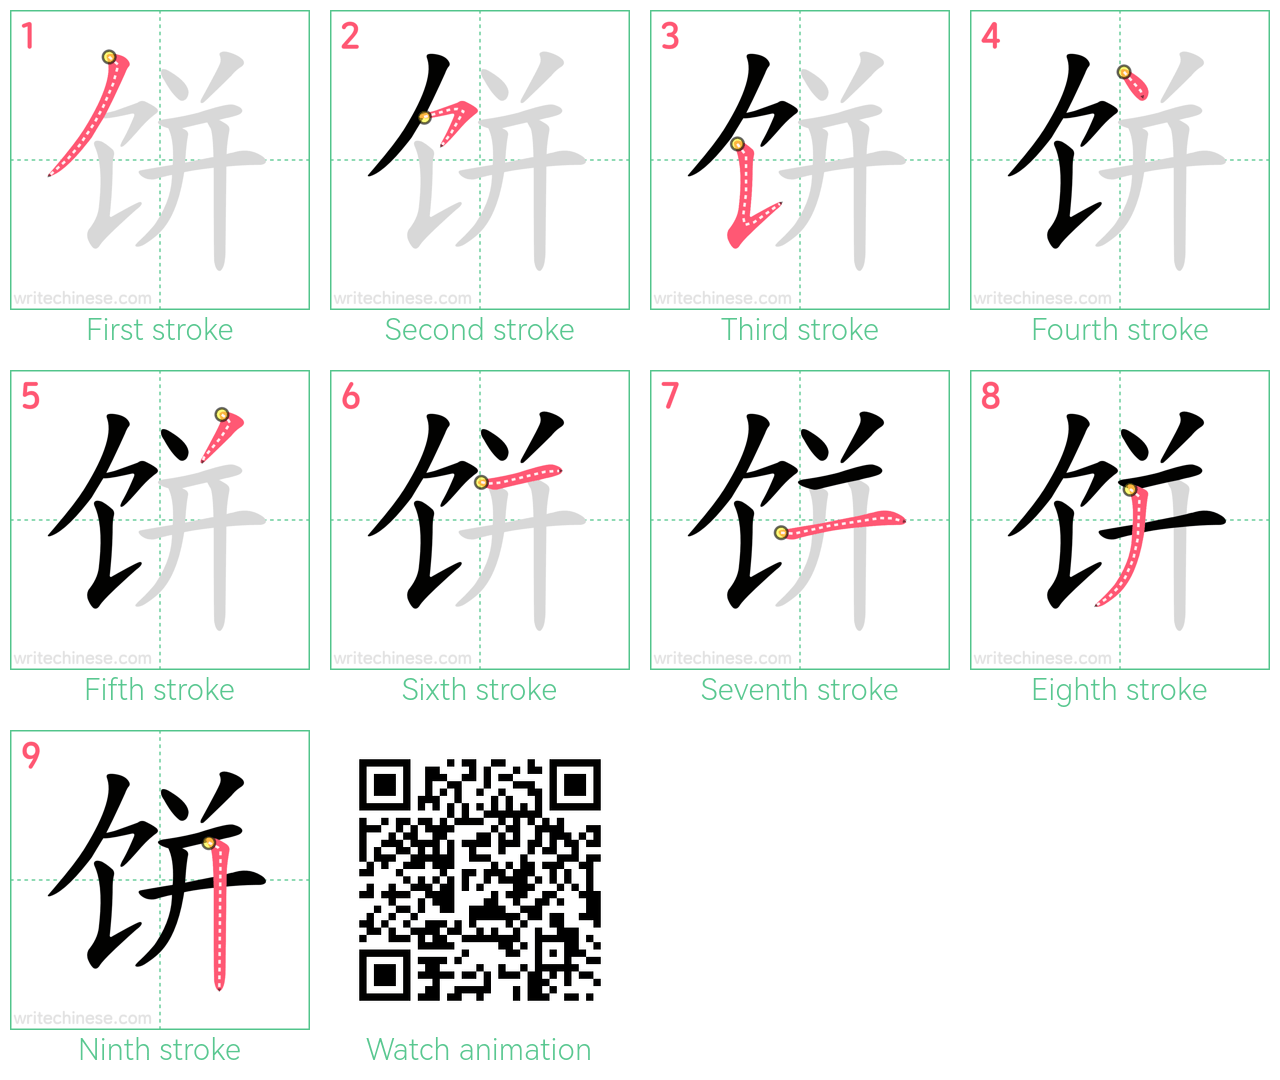 饼 step-by-step stroke order diagrams